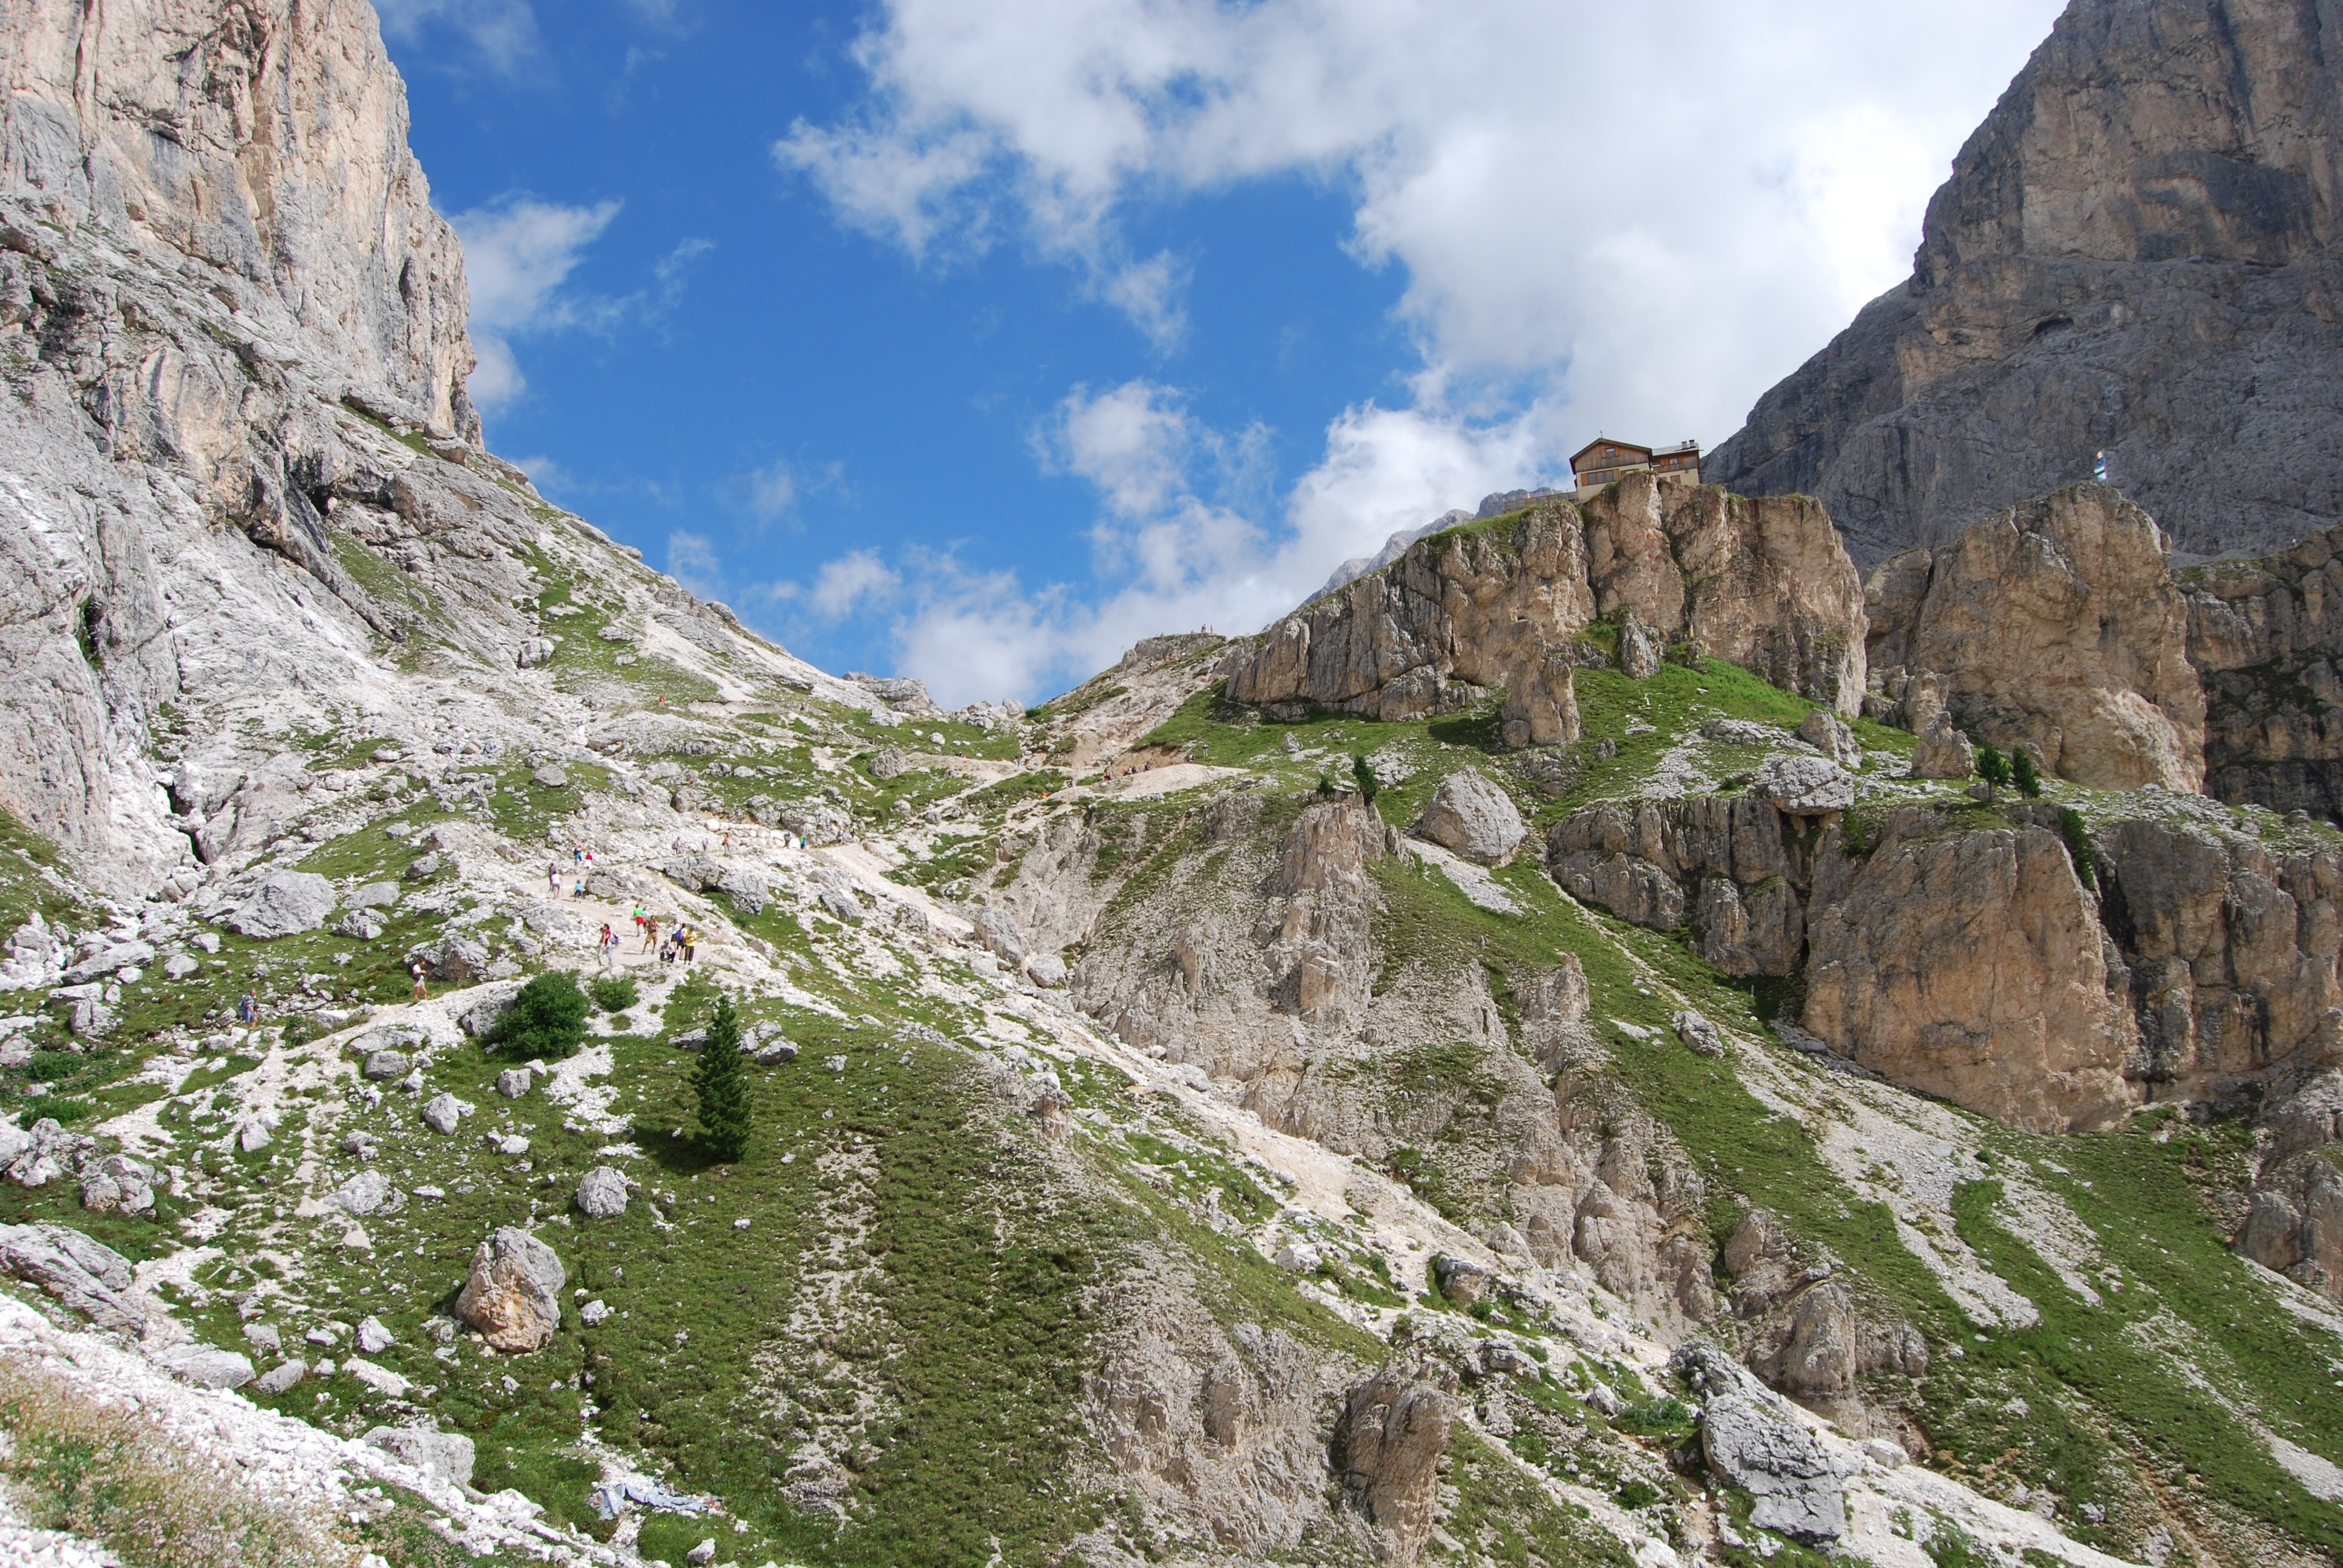 Dolomites, Mountains, Mountain, Italy, rock - object, mountain